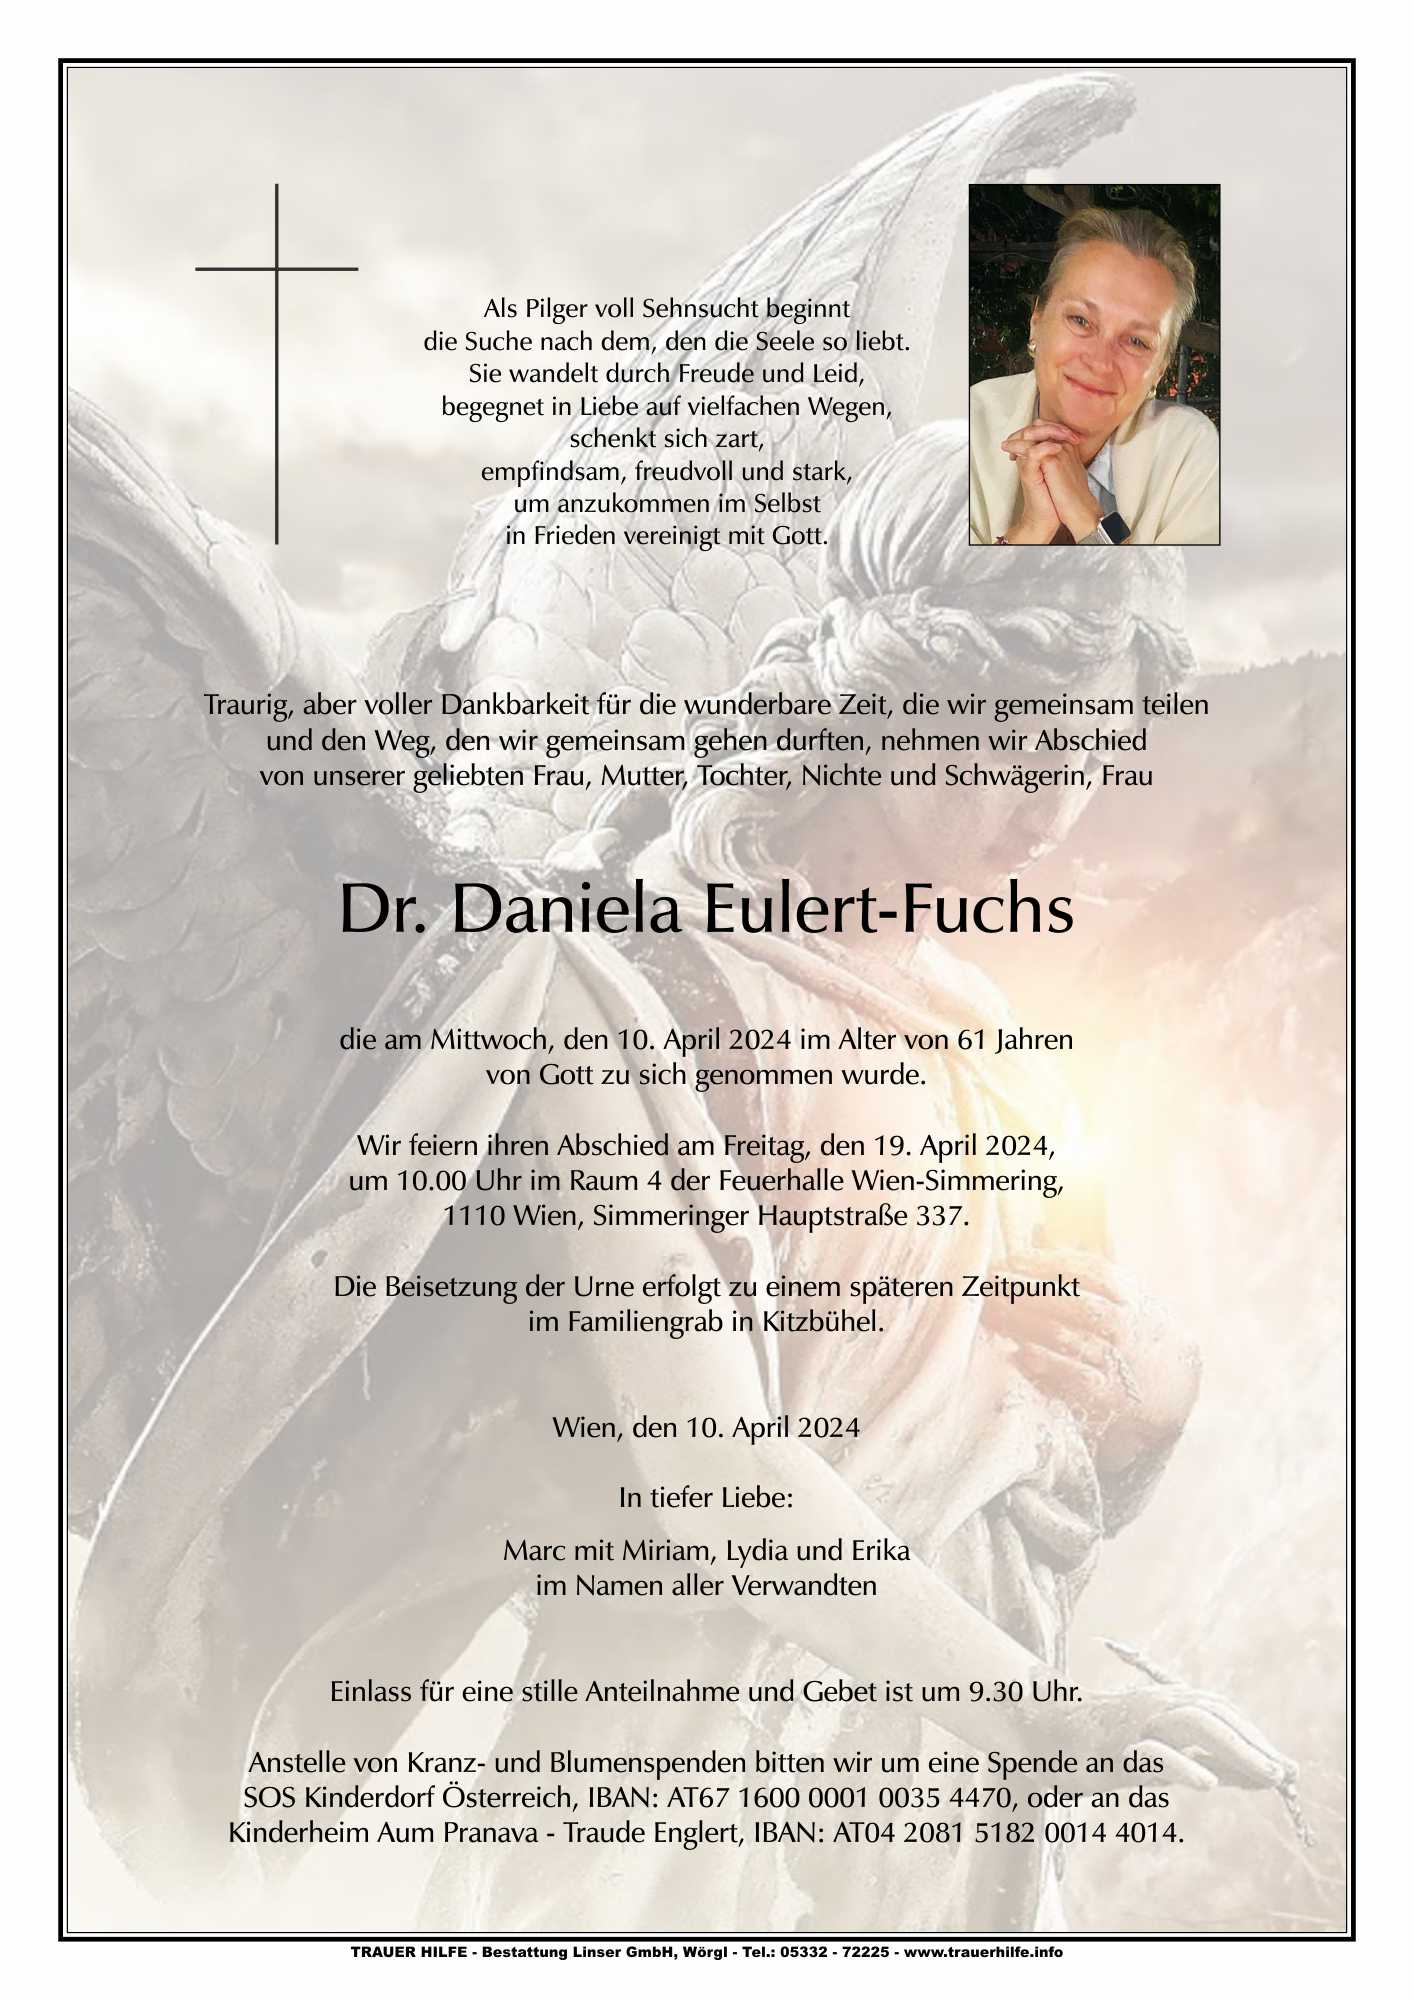 Dr. Daniela Eulert-Fuchs